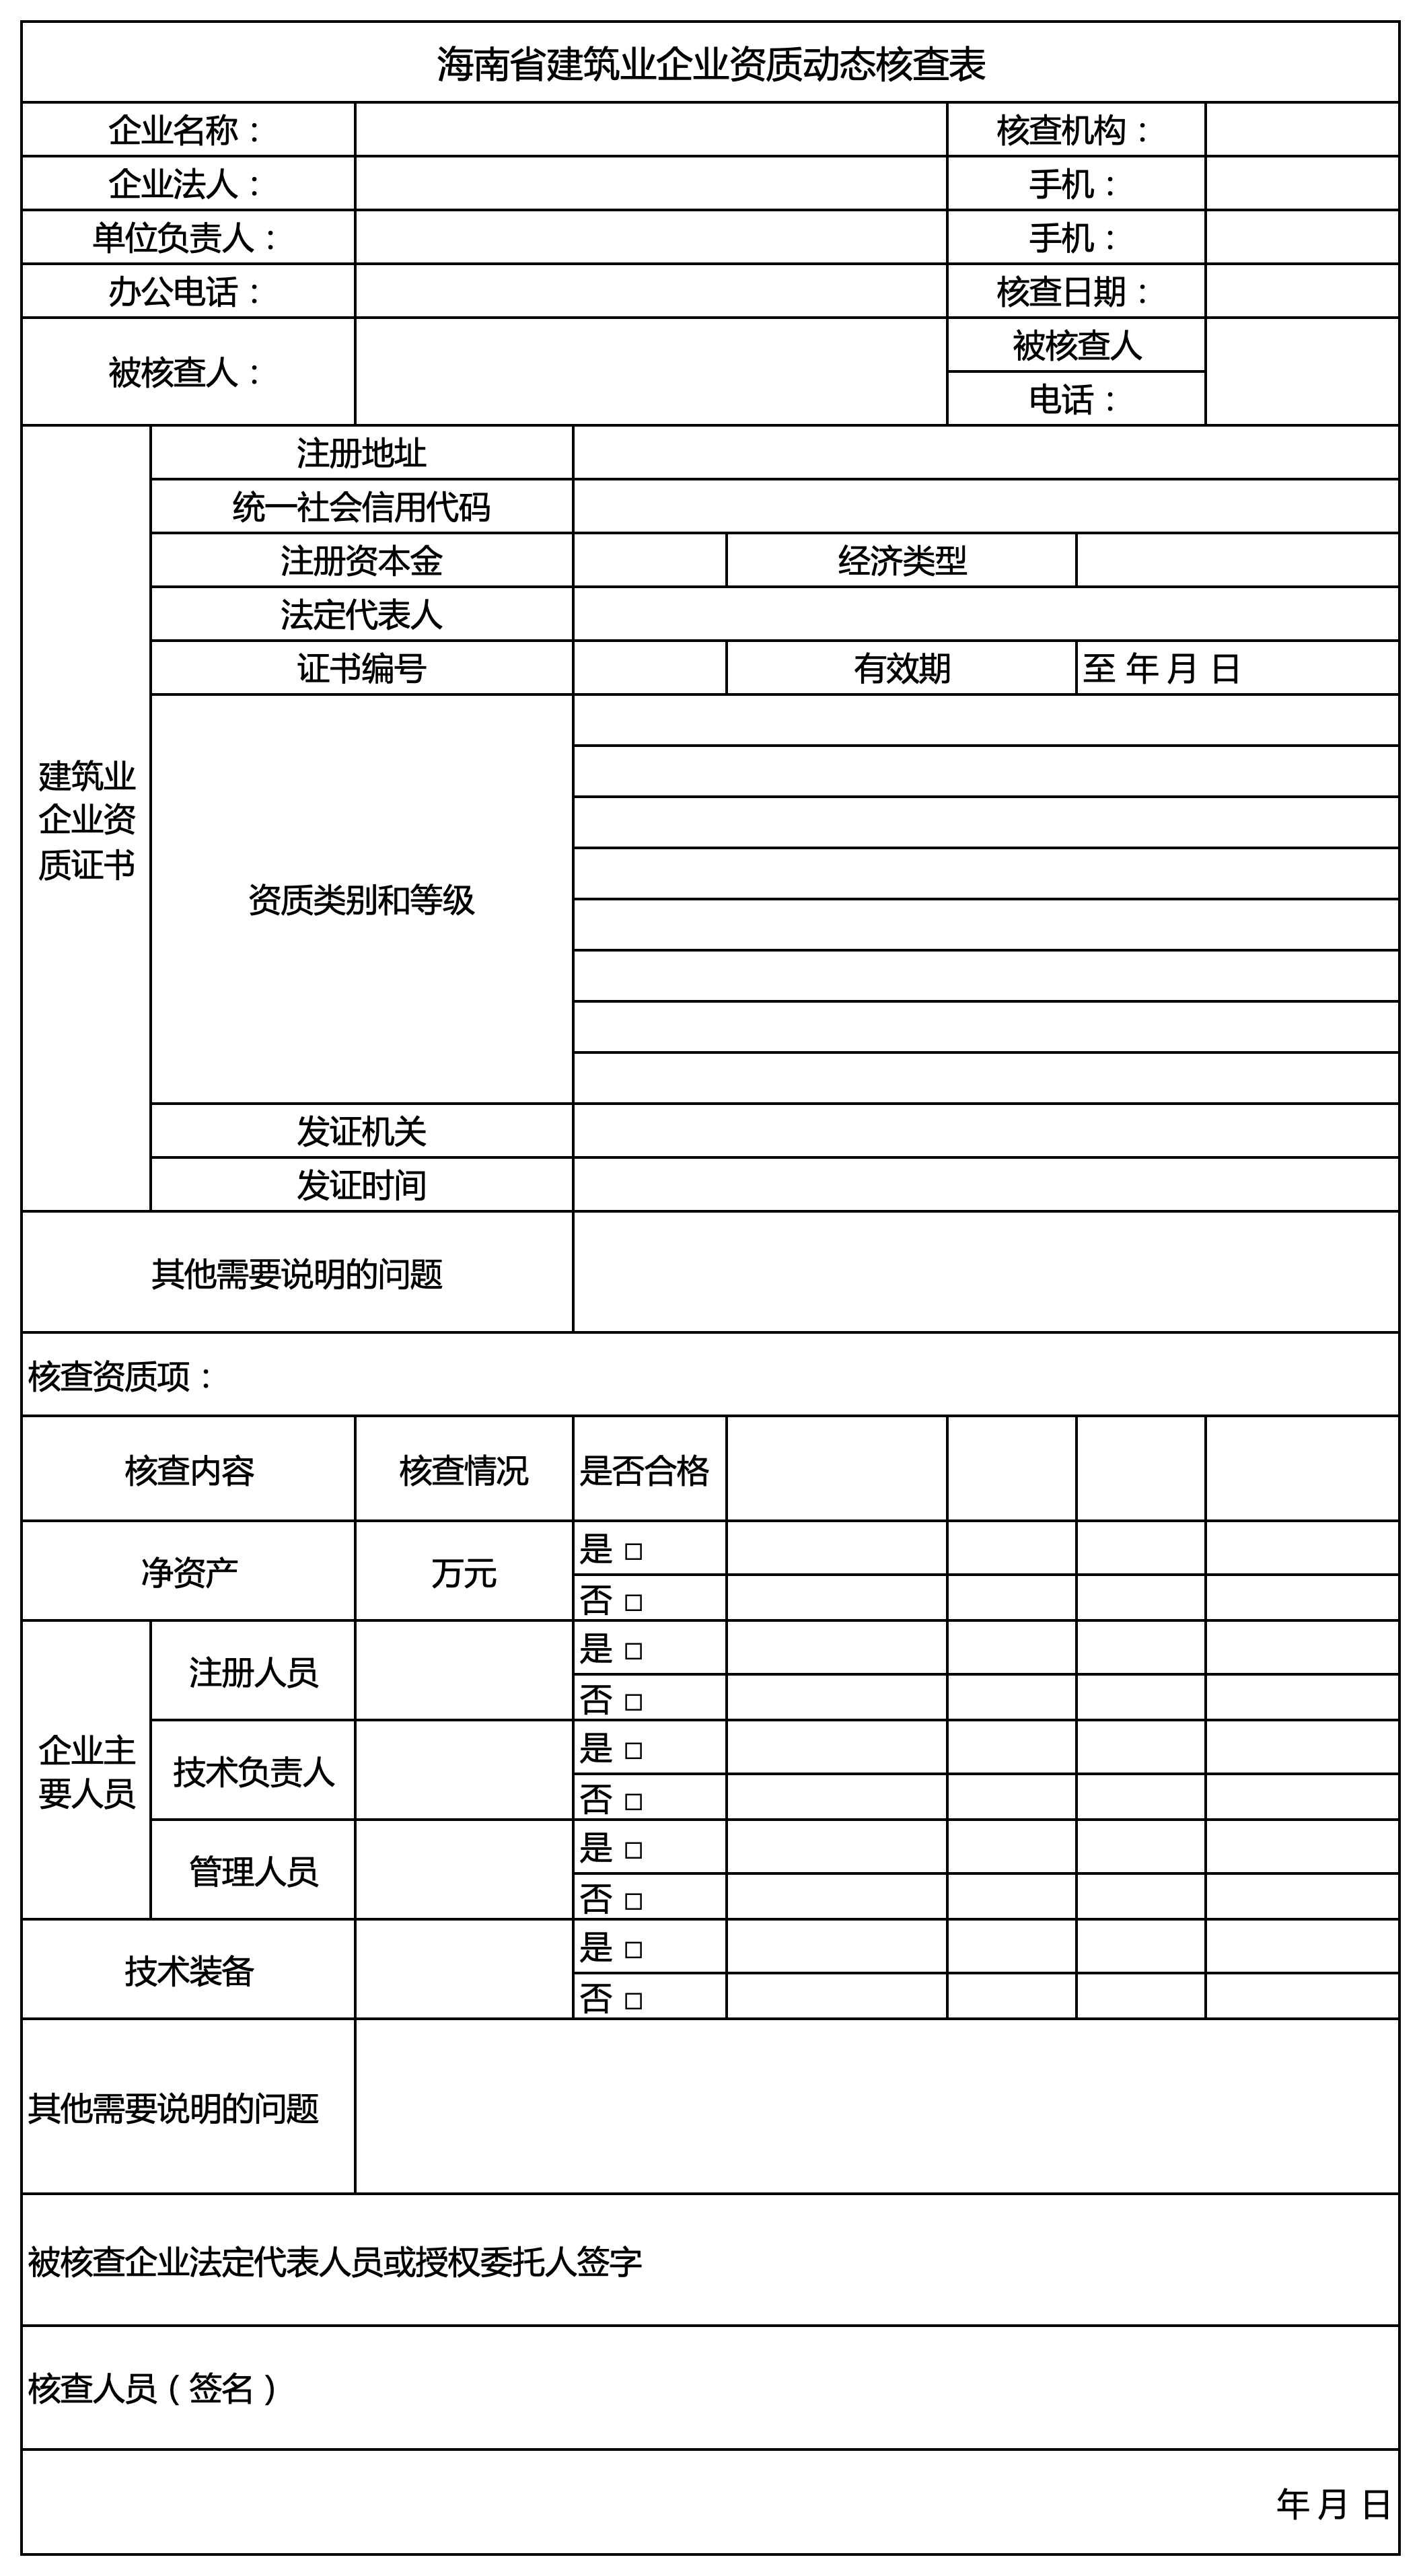 海南省建筑业企业资质动态核查表1.png